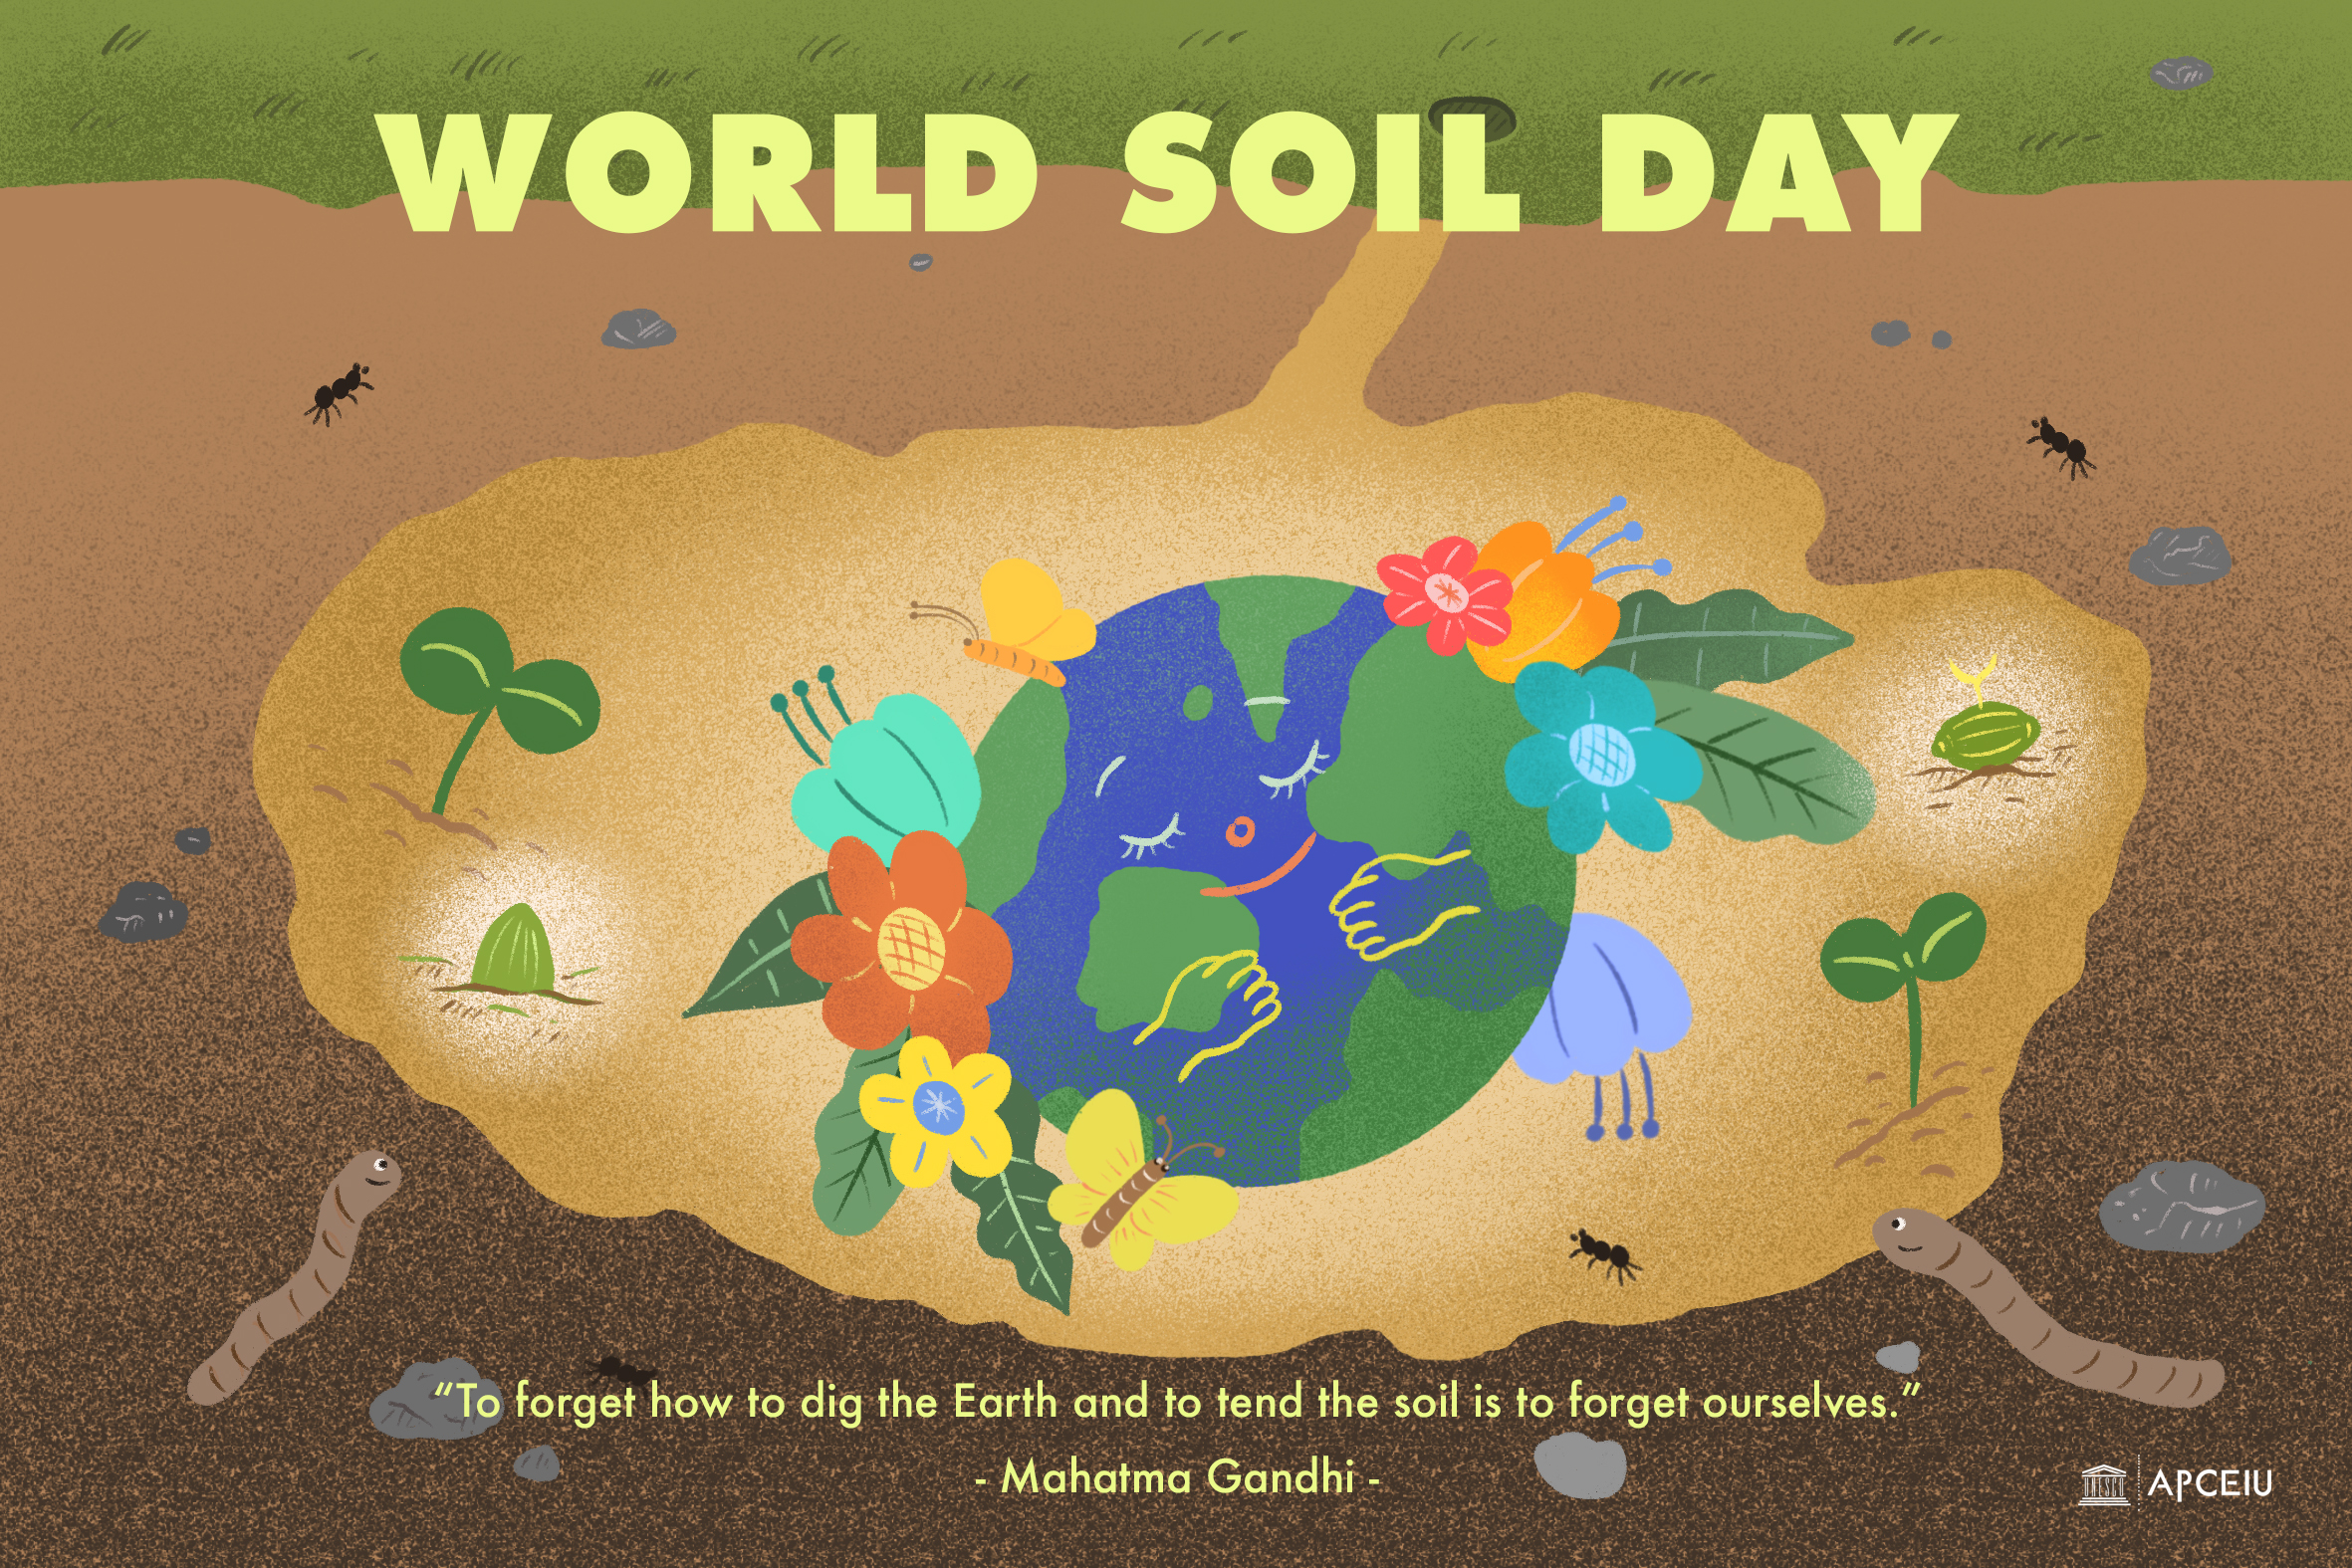 World soil day illustration.jpg